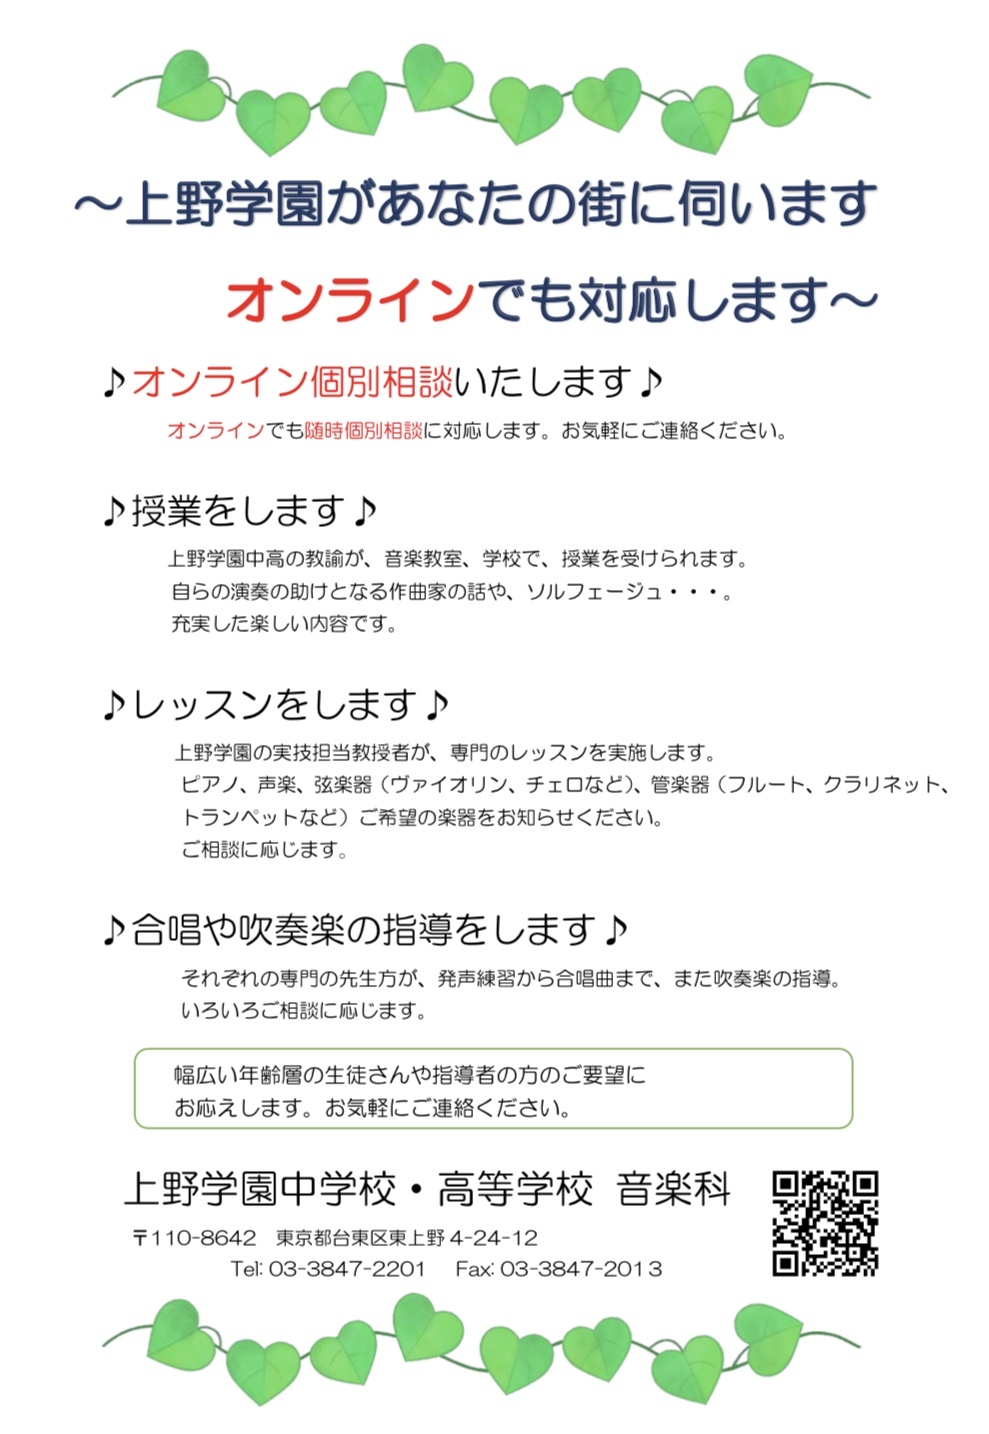 https://www.uenogakuen.ac.jp/keiseikai/items/2020/08/anatanomachi.jpg